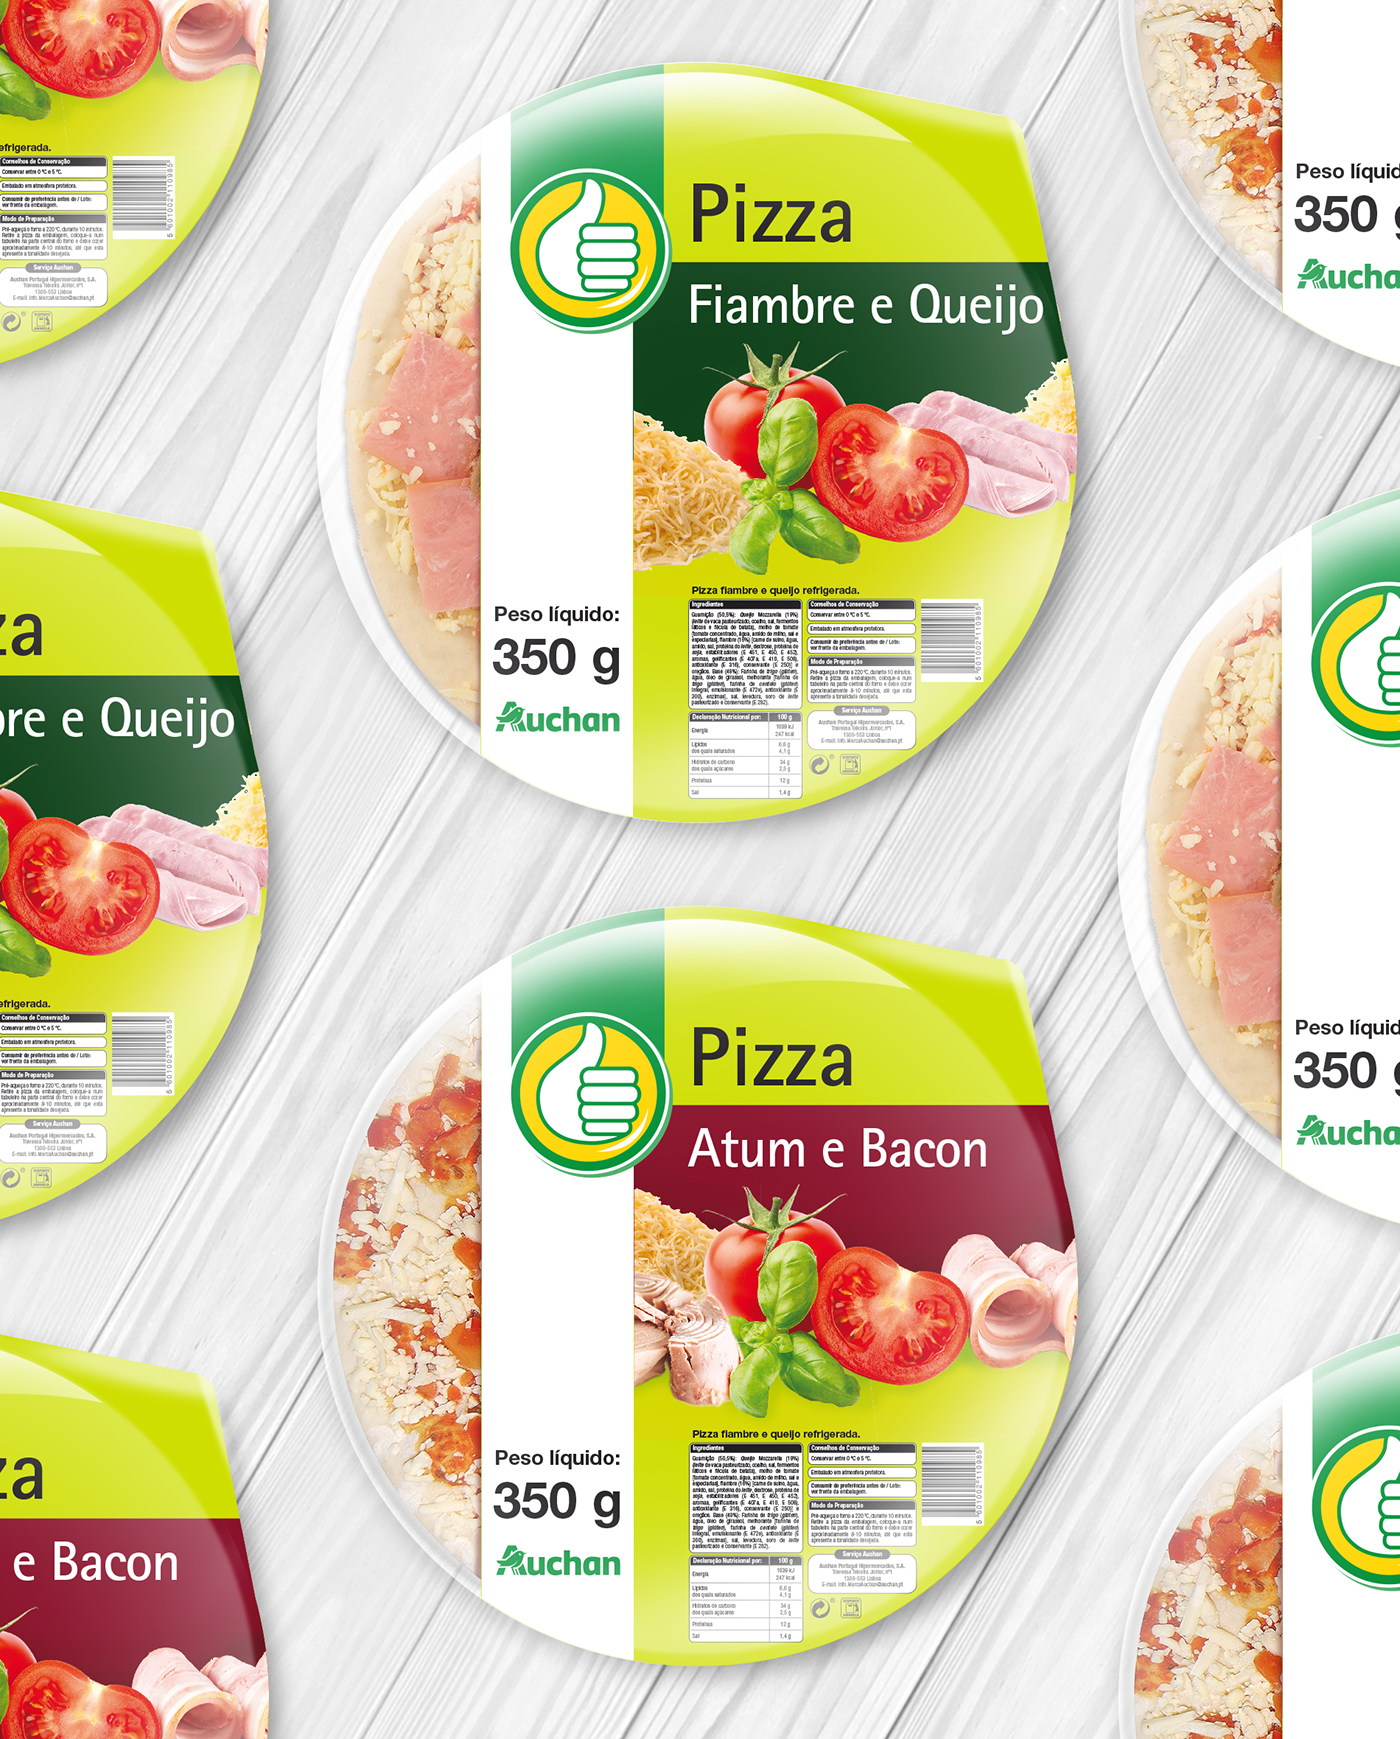 Pizzas Label print Packaging bacon Cheese polegar Auchan ham tuna